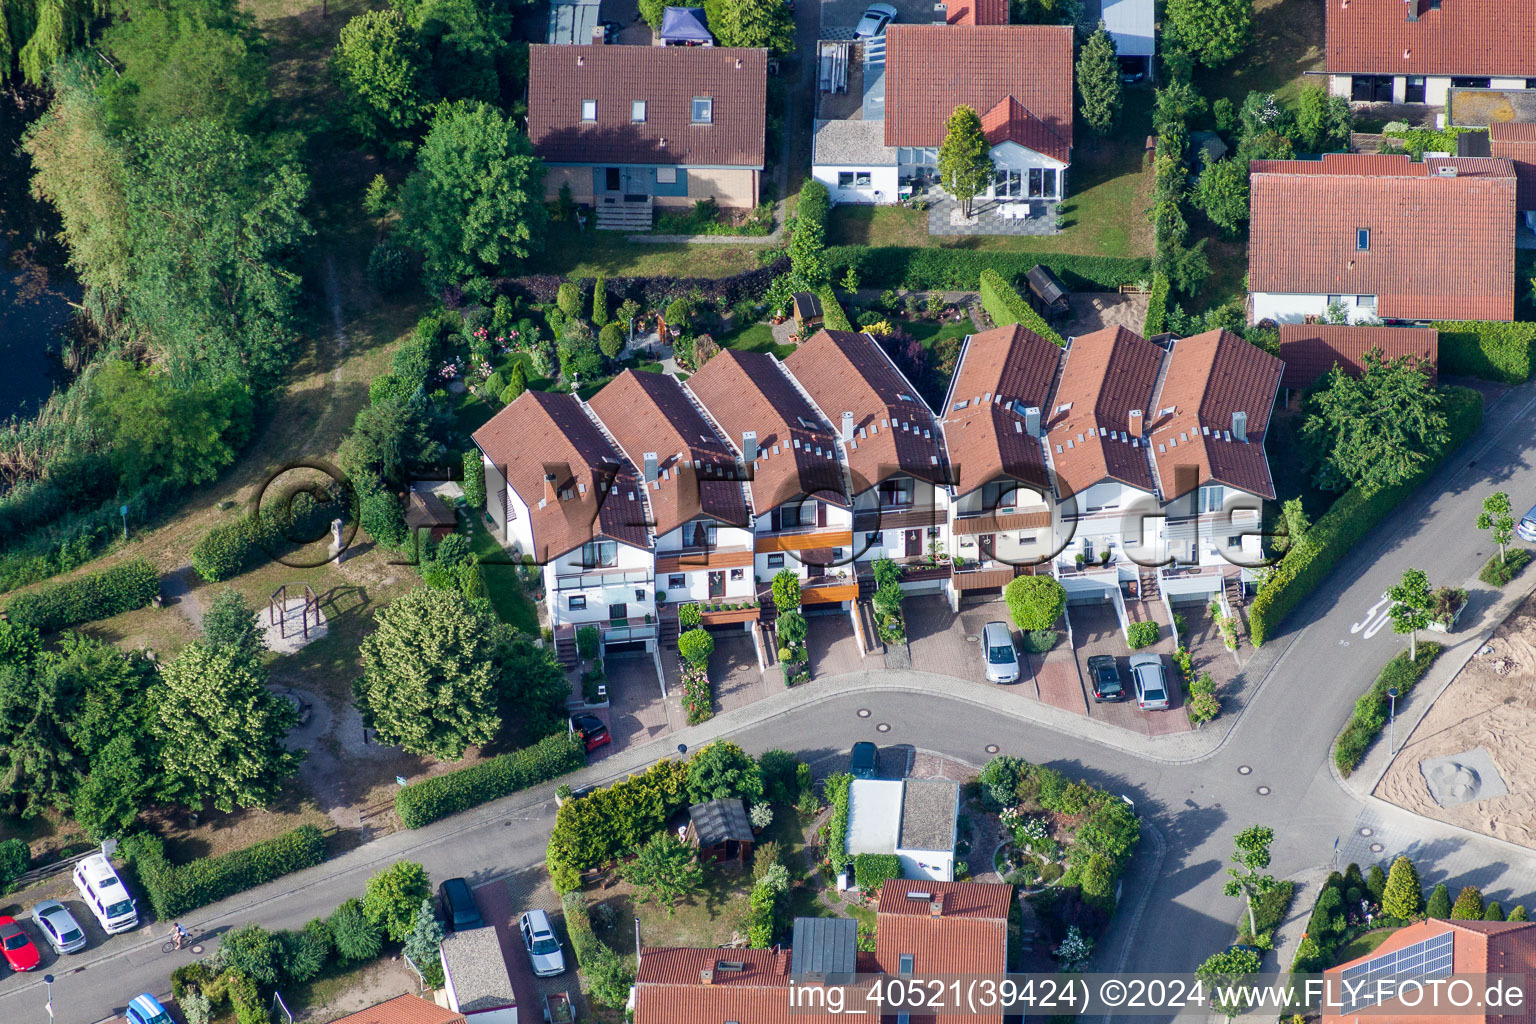 Vue aérienne de Villas dans le quartier résidentiel d'un lotissement de maisons unifamiliales à Tongruben à Rheinzabern dans le département Rhénanie-Palatinat, Allemagne